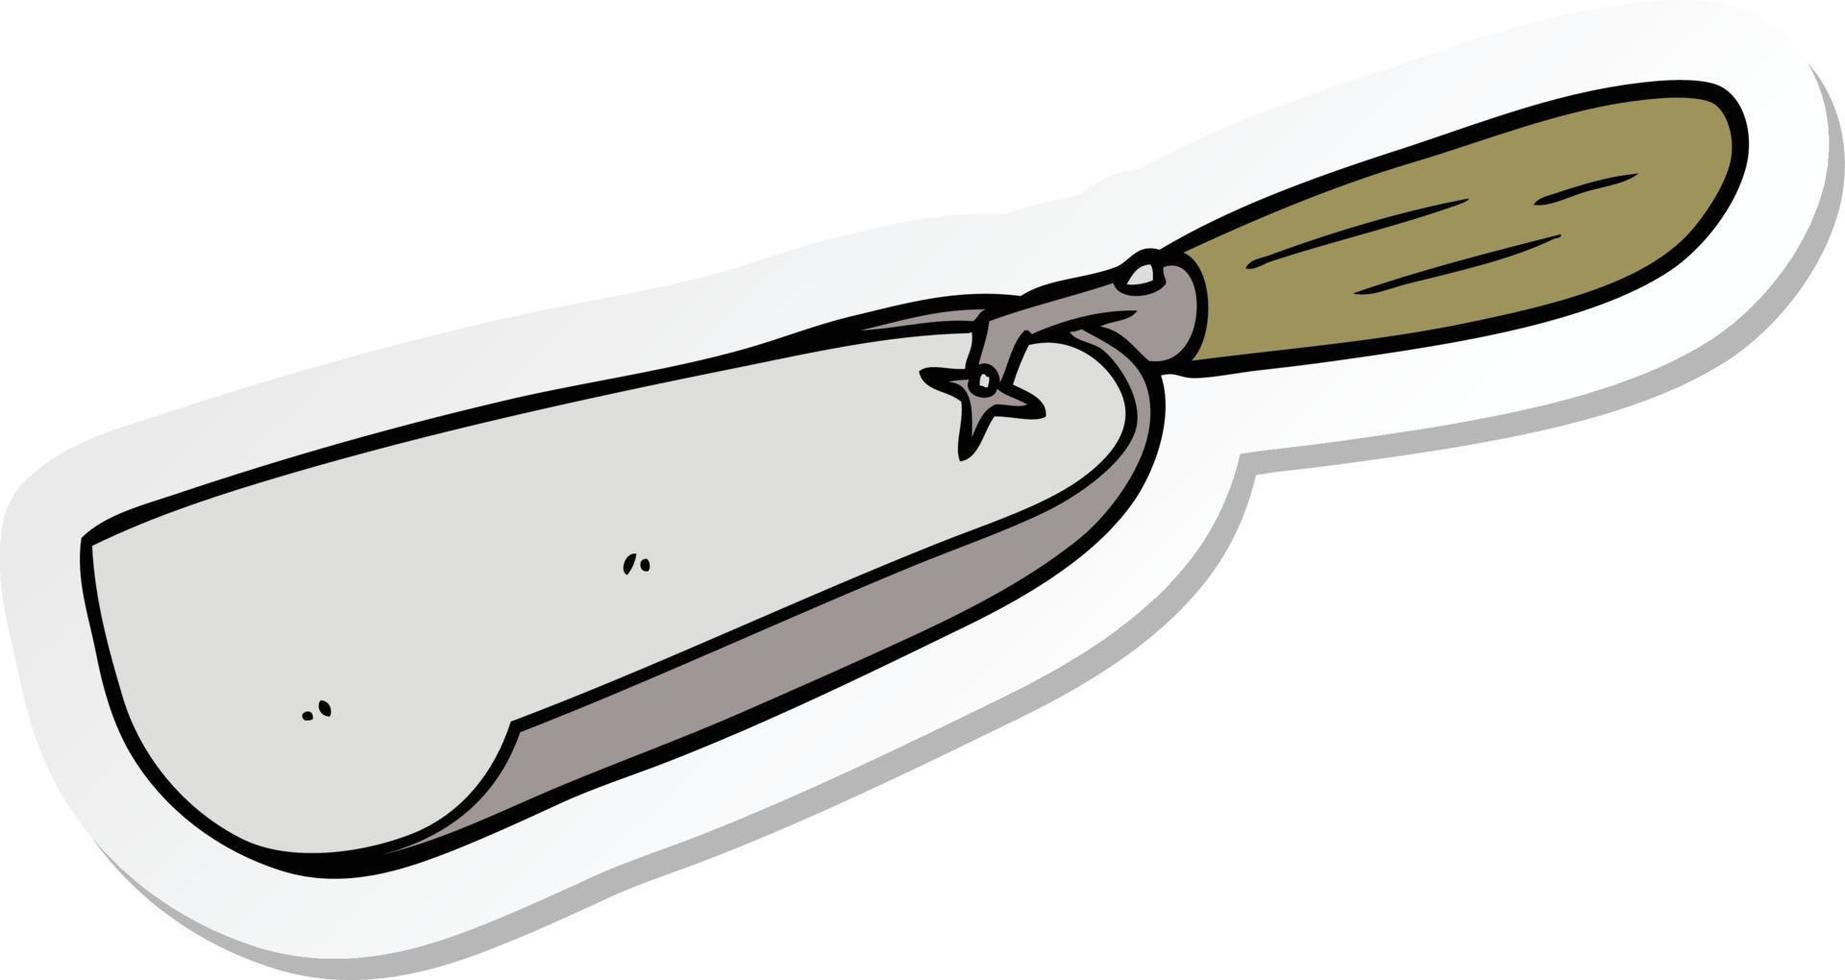 sticker of a cartoon coal shovel vector